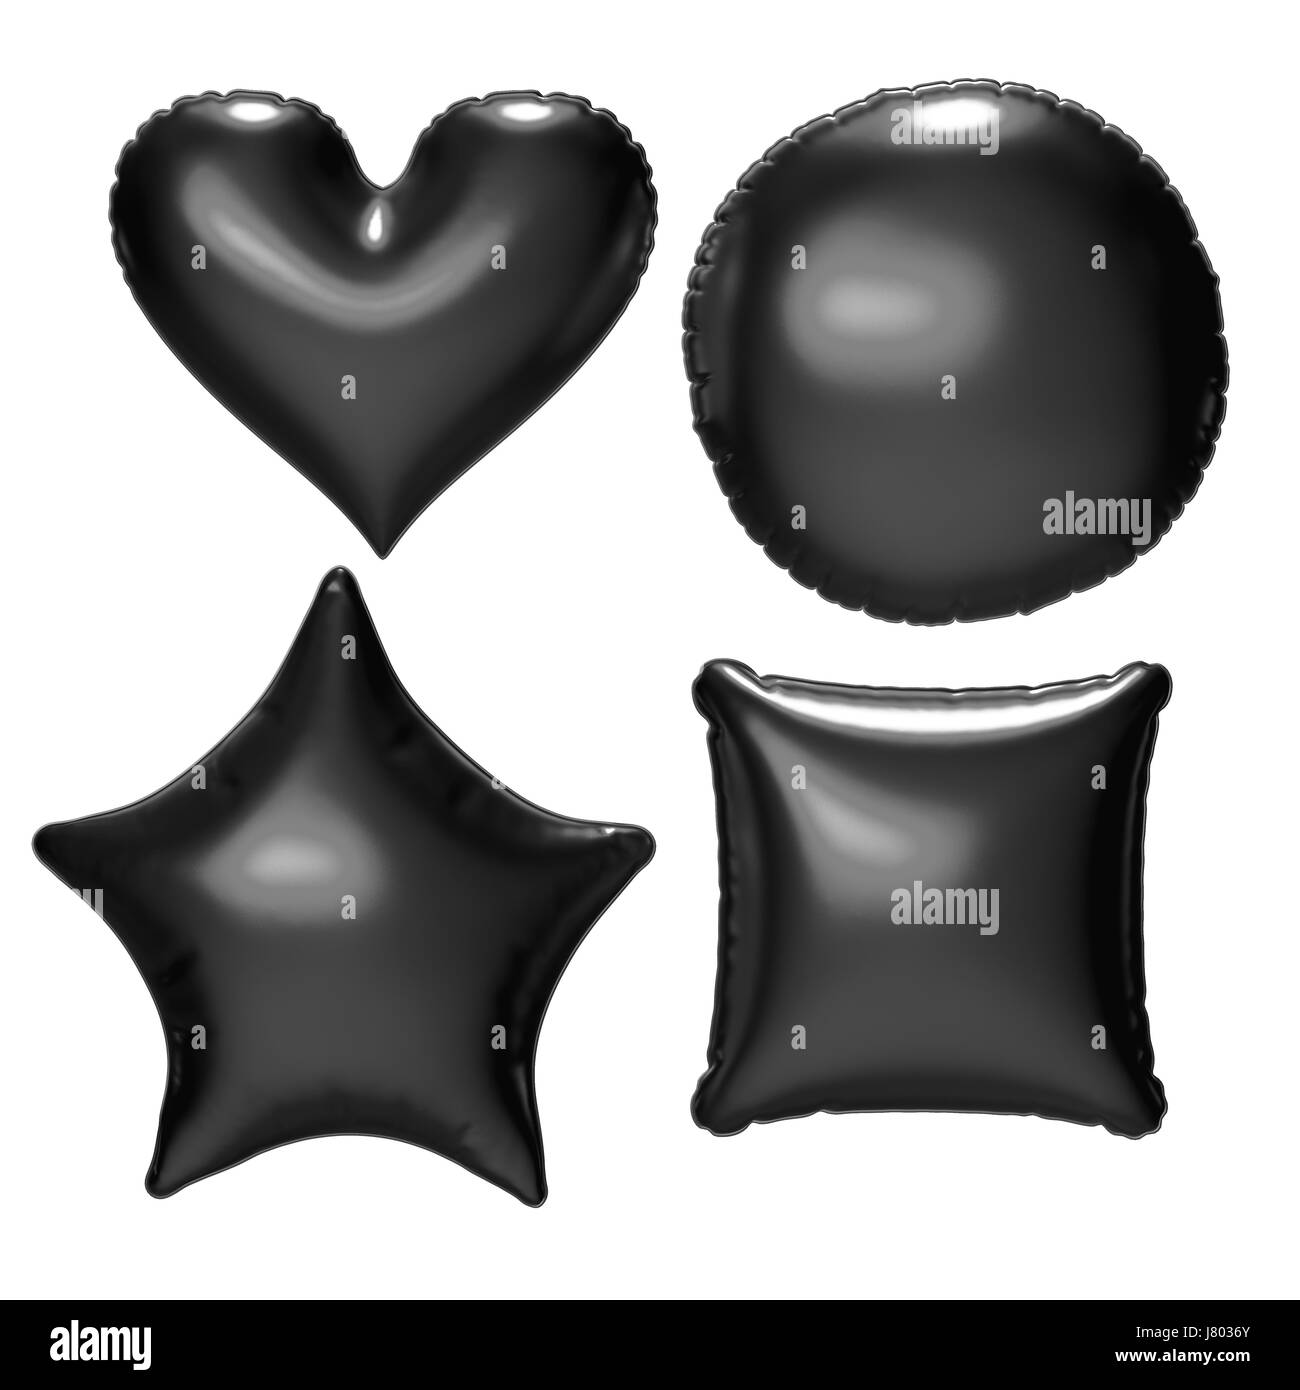 Ballon coeur aluminium noir et or mabre